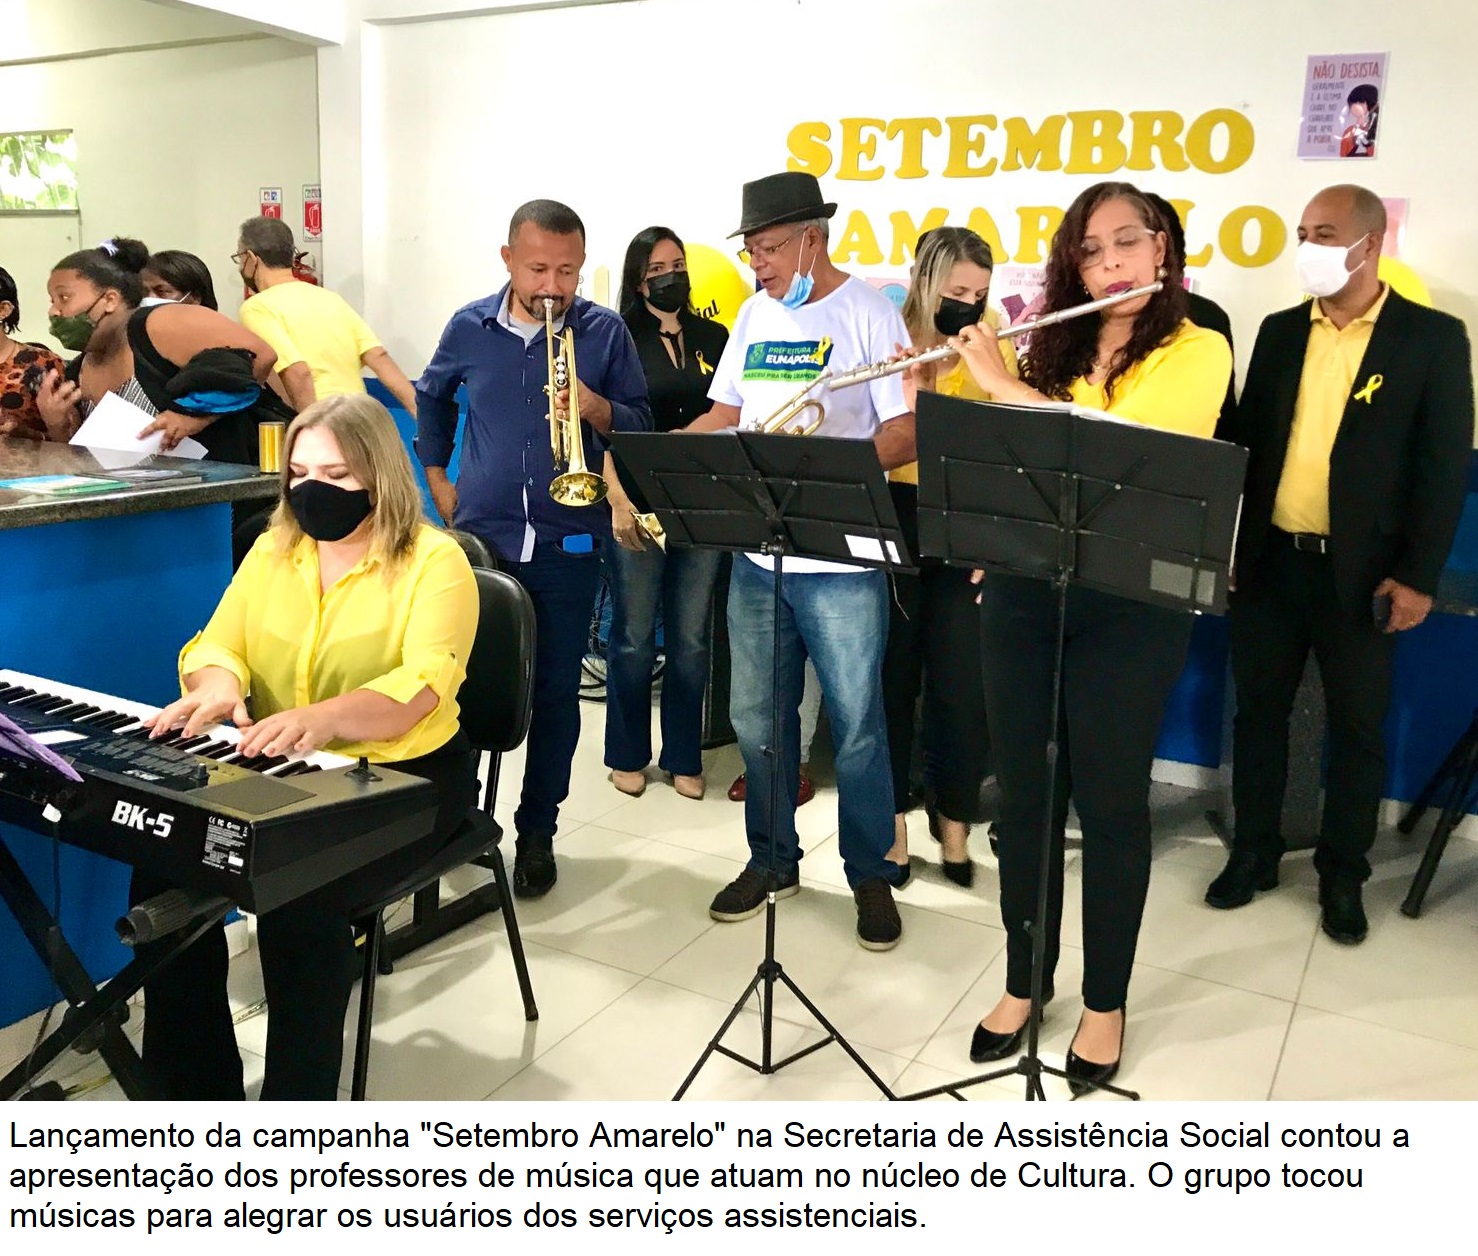 Secretaria de Assistência Social lança “Setembro Amarelo” para usuários dos serviços assistenciais 84